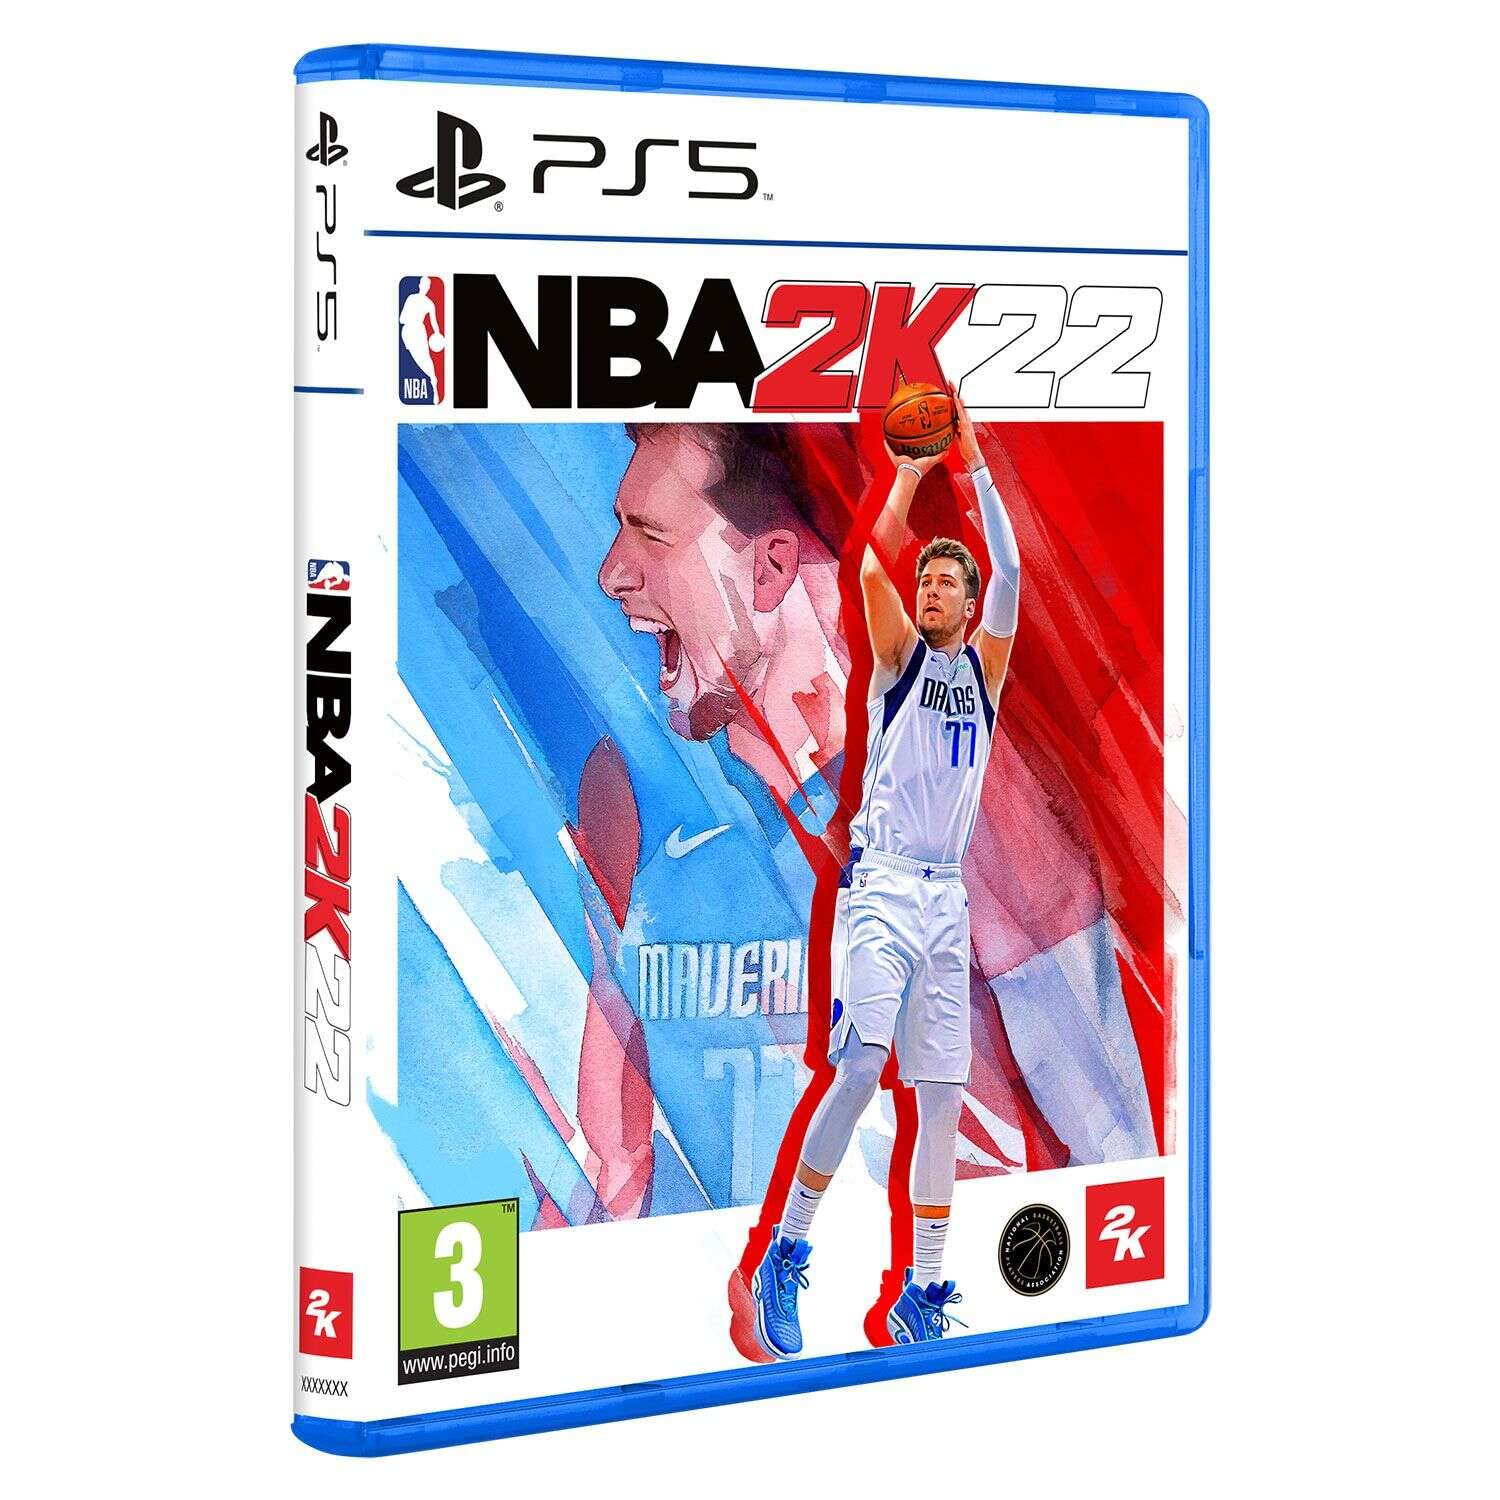 Amazon.com: NBA 2K22 PS5 : Video Games $34